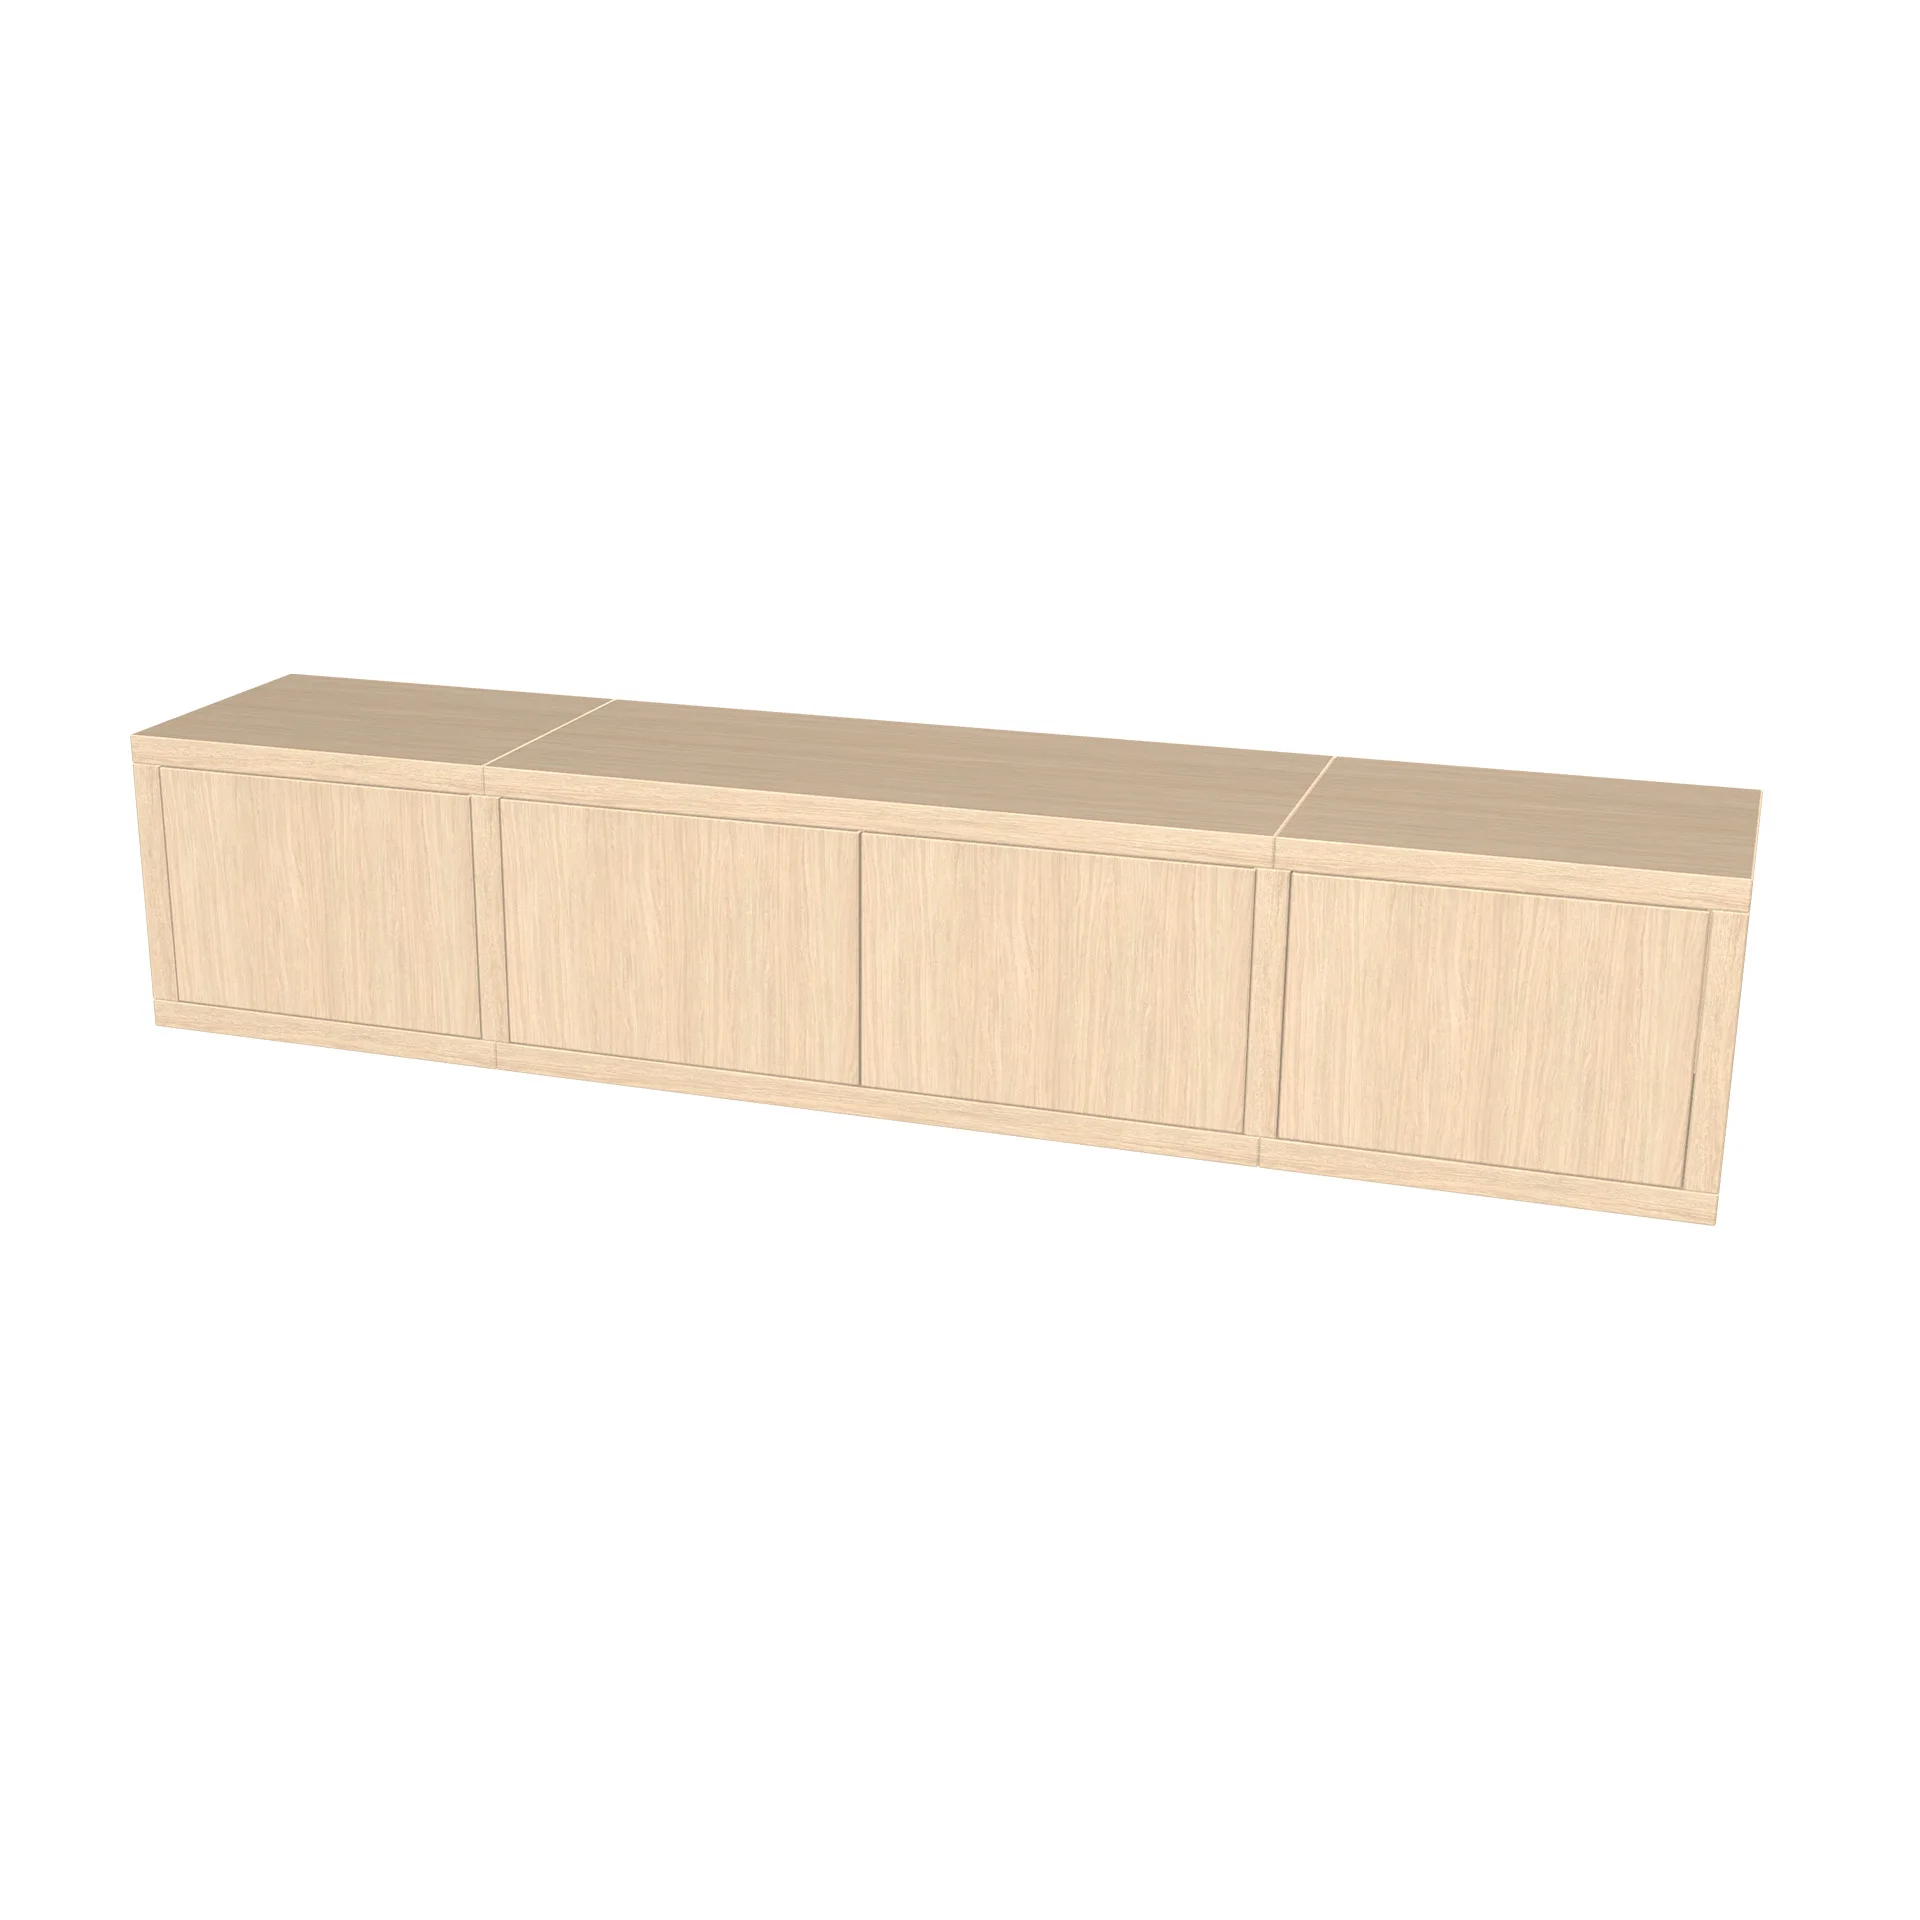 TSFC020 in natural oak furniture board